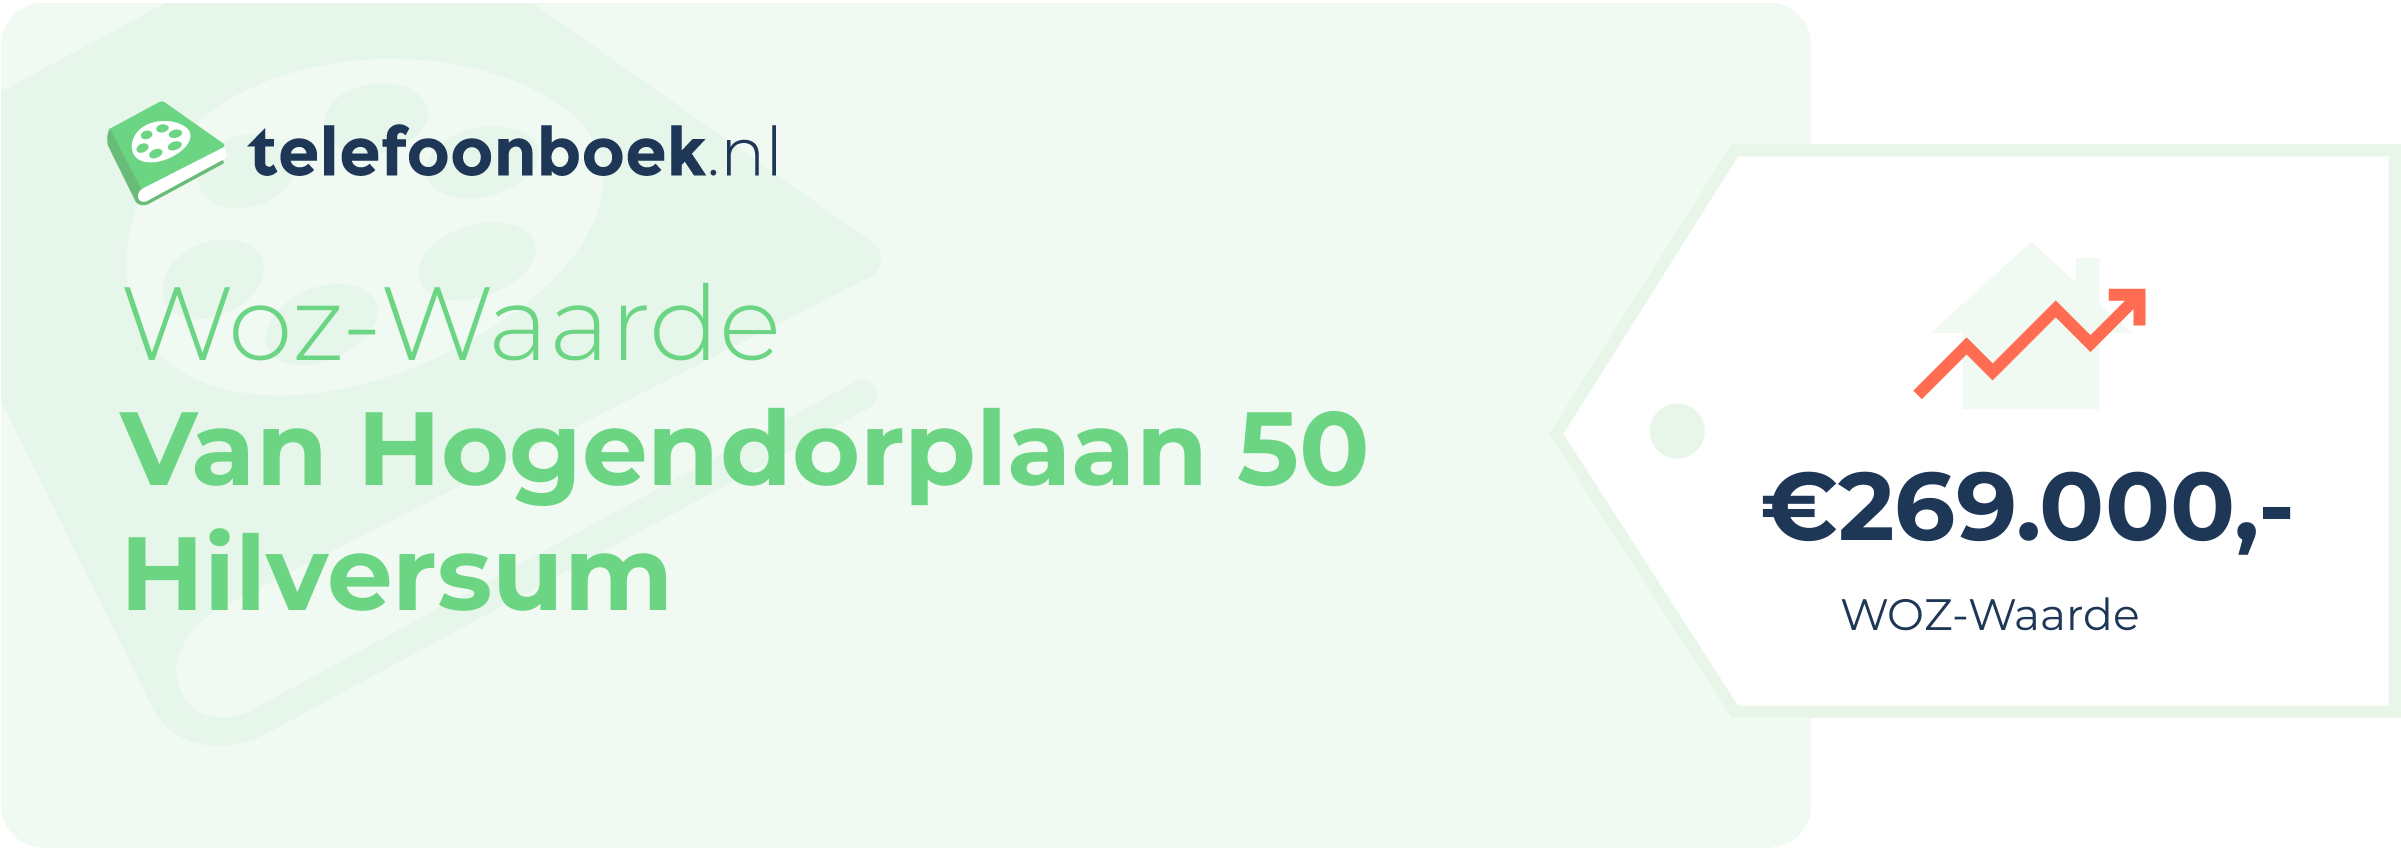 WOZ-waarde Van Hogendorplaan 50 Hilversum